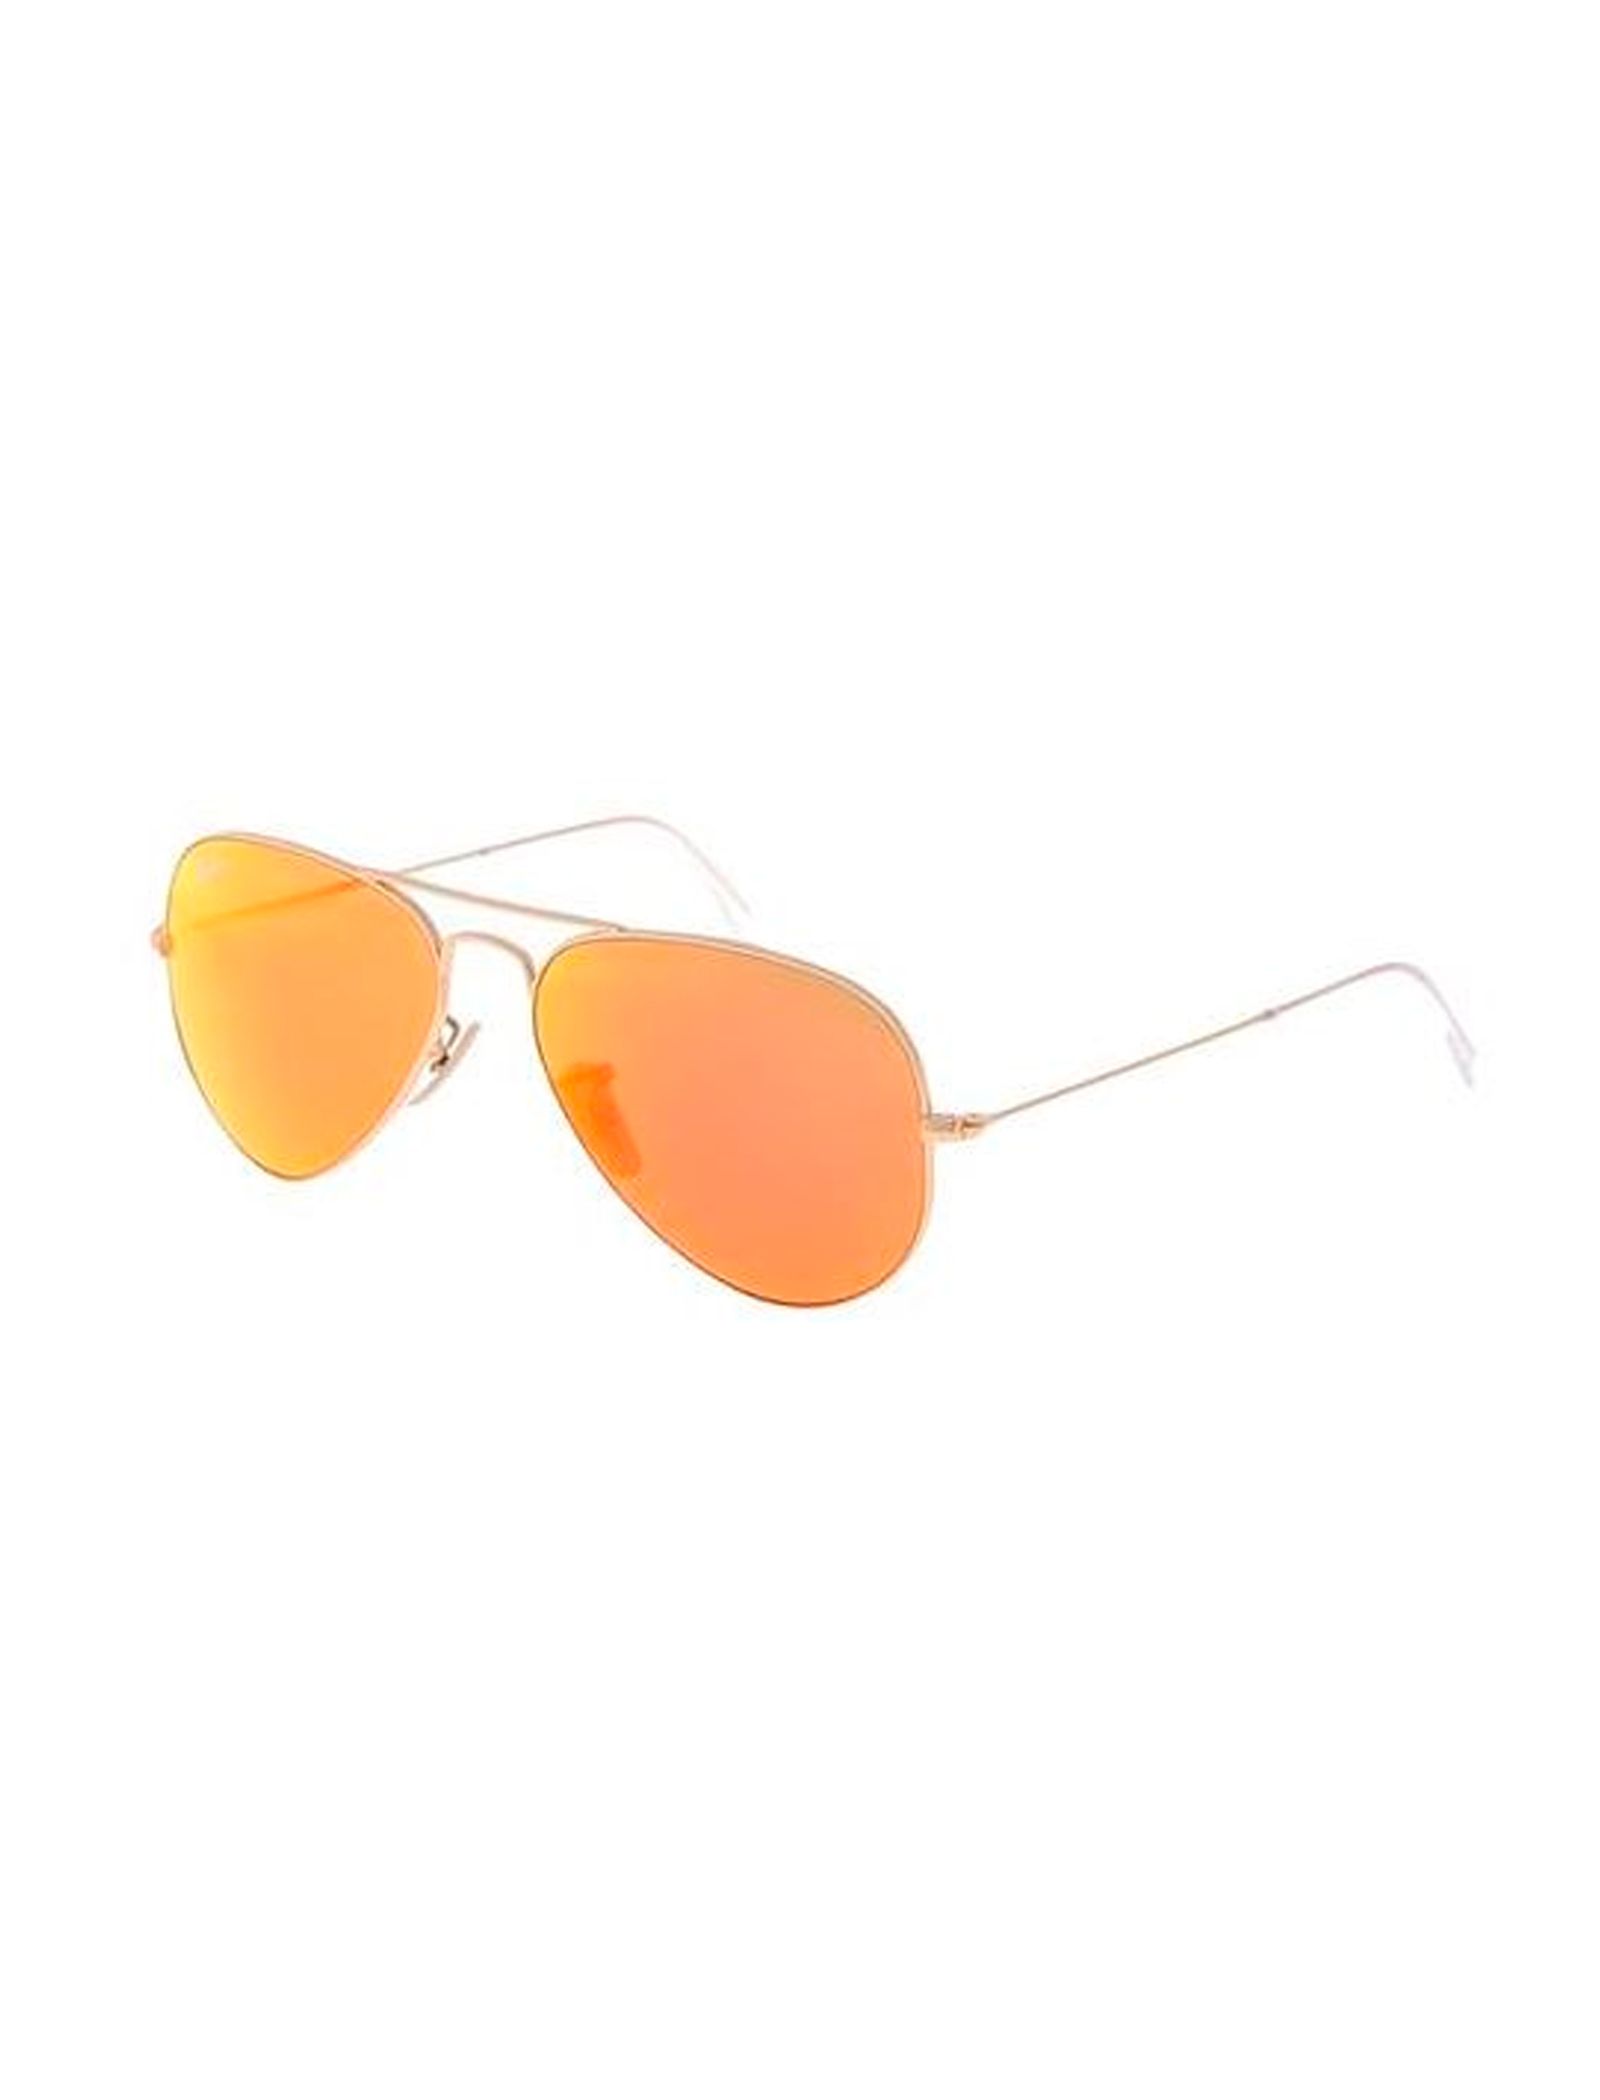 عینک آفتابی ری بن مدل 3025-112/69 - طلایی - 4